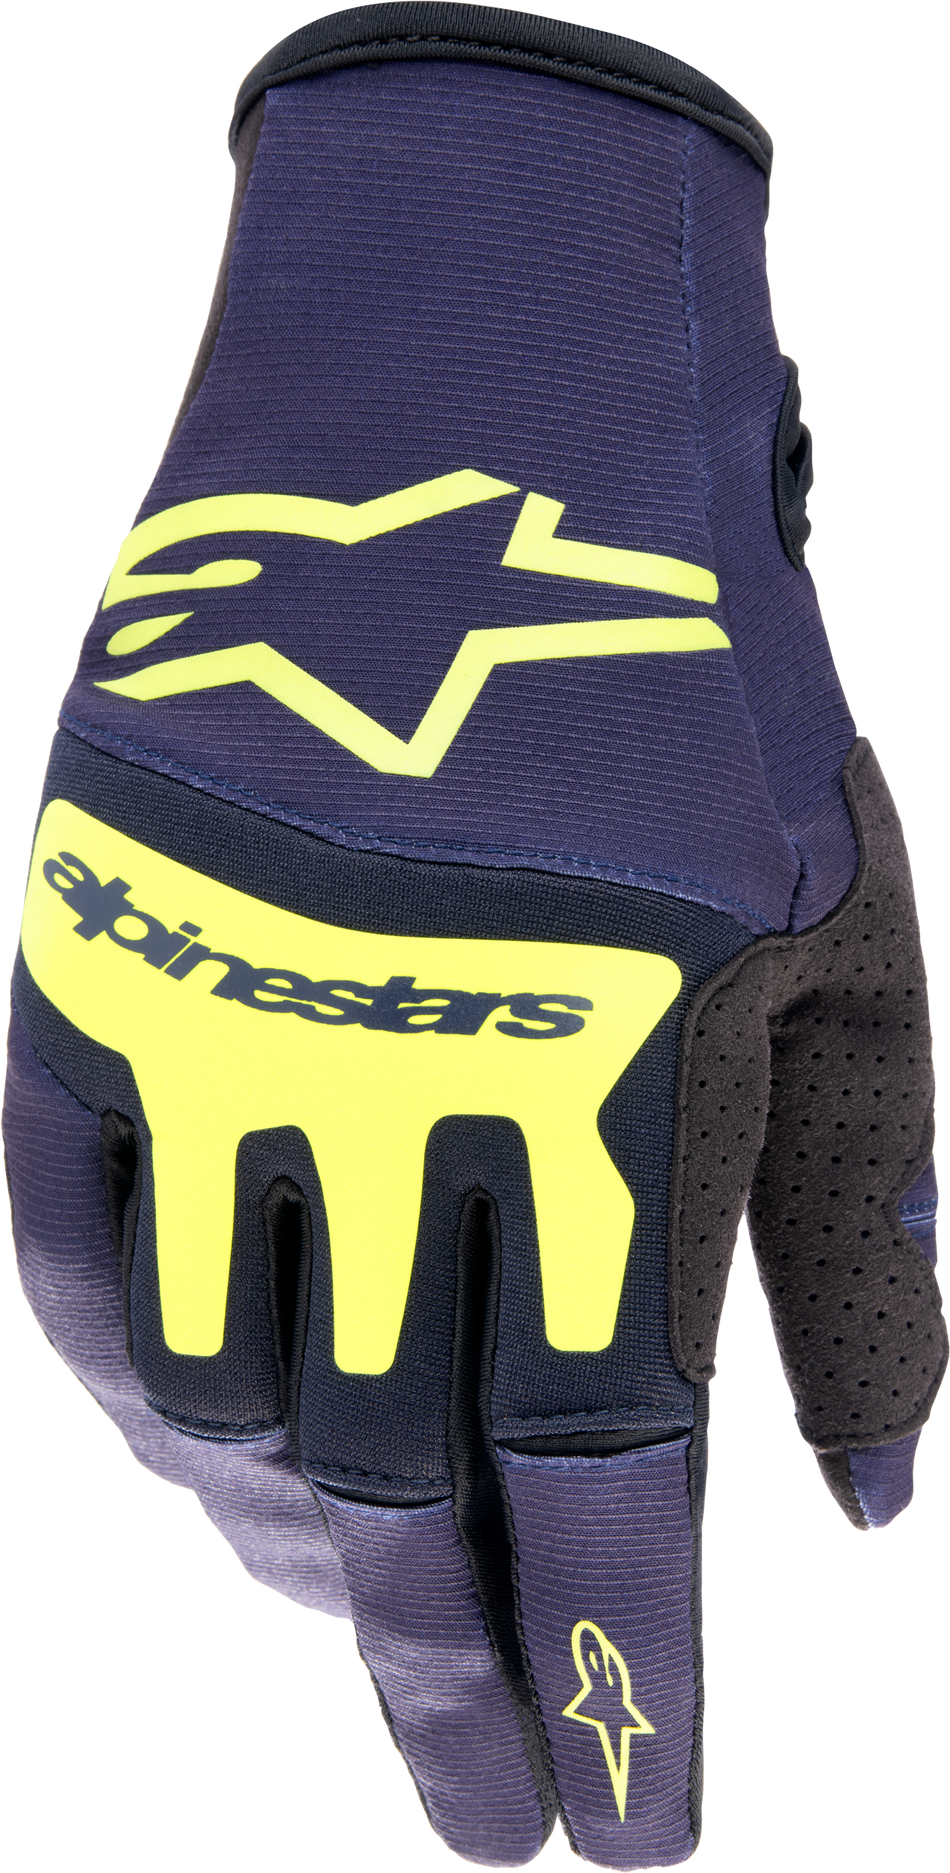 ALPINESTARS Techstar Gloves Night Navy/Yellow Fluo Lg 3561023-7455-L